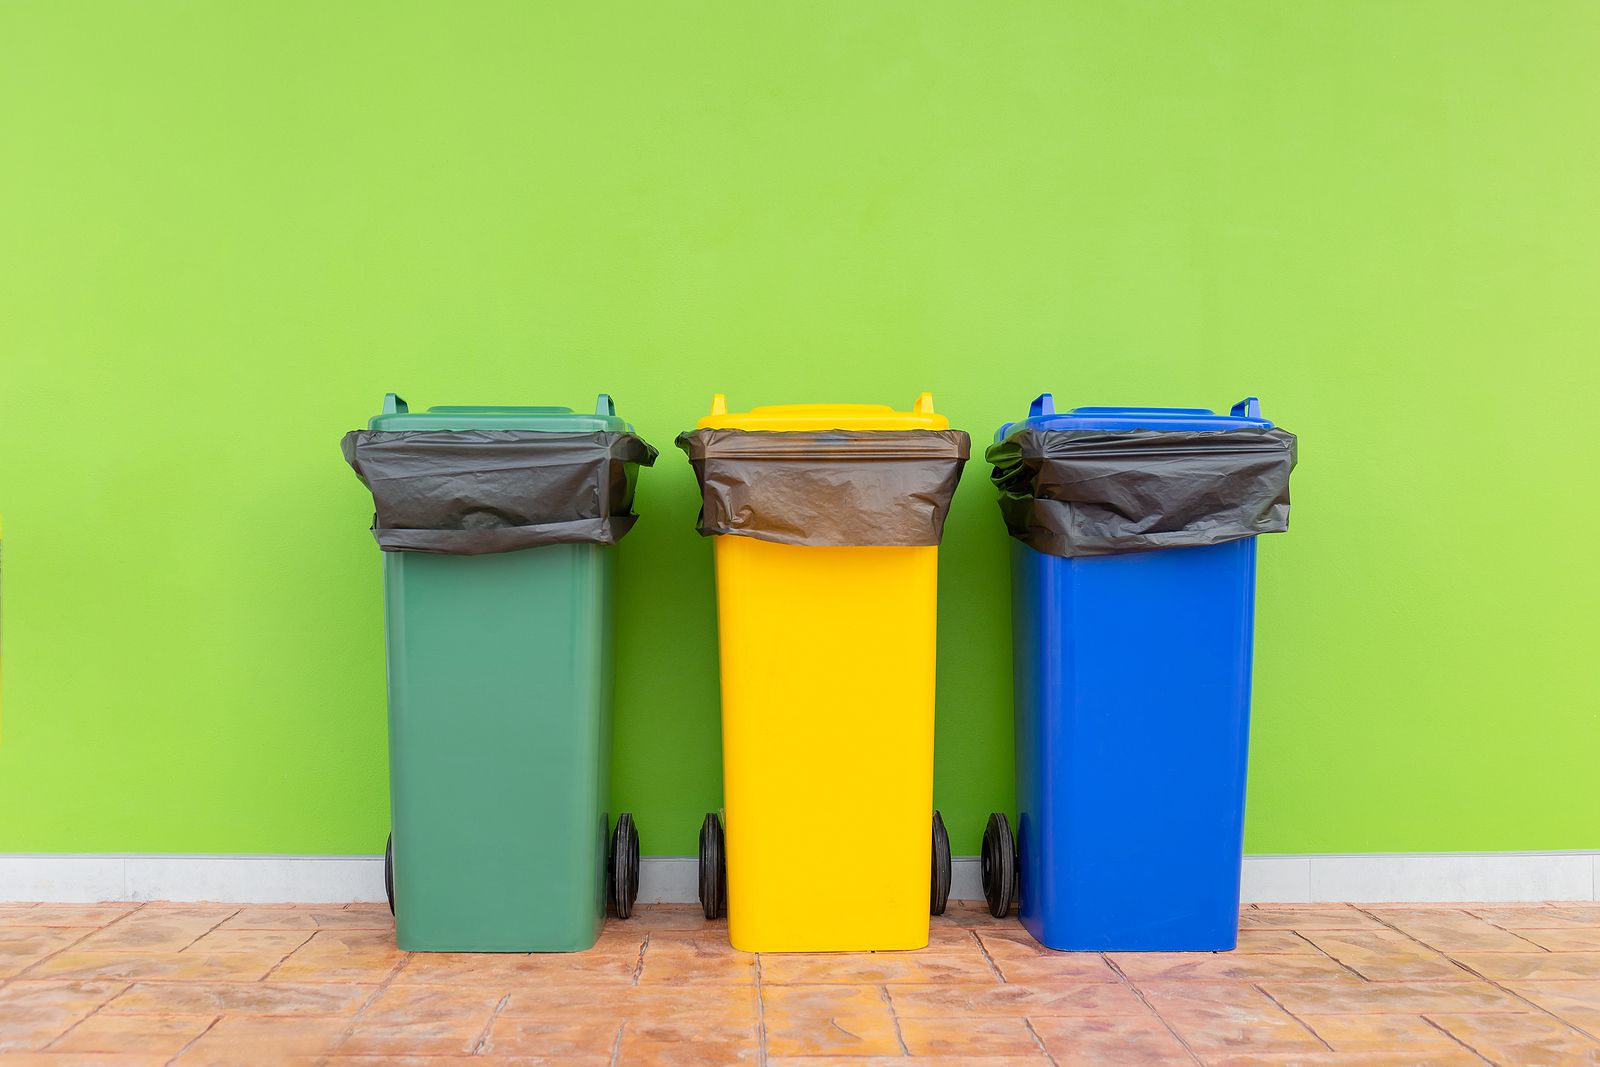 Dudas con el reciclaje: ¿en qué contenedor va el celo? ¿Y las perchas?